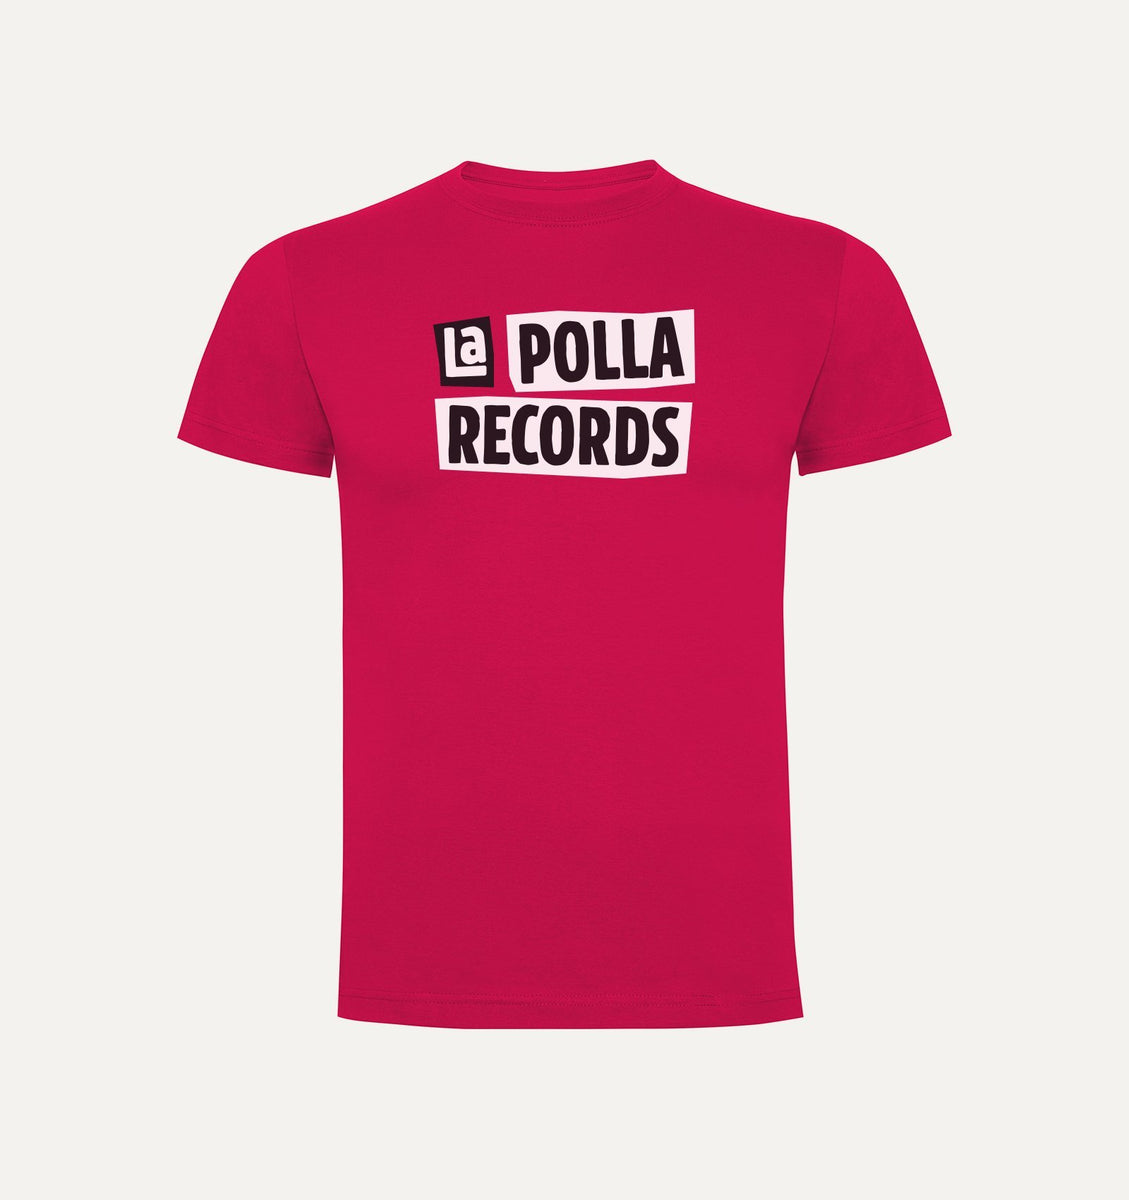 La Polla Records Camisetas